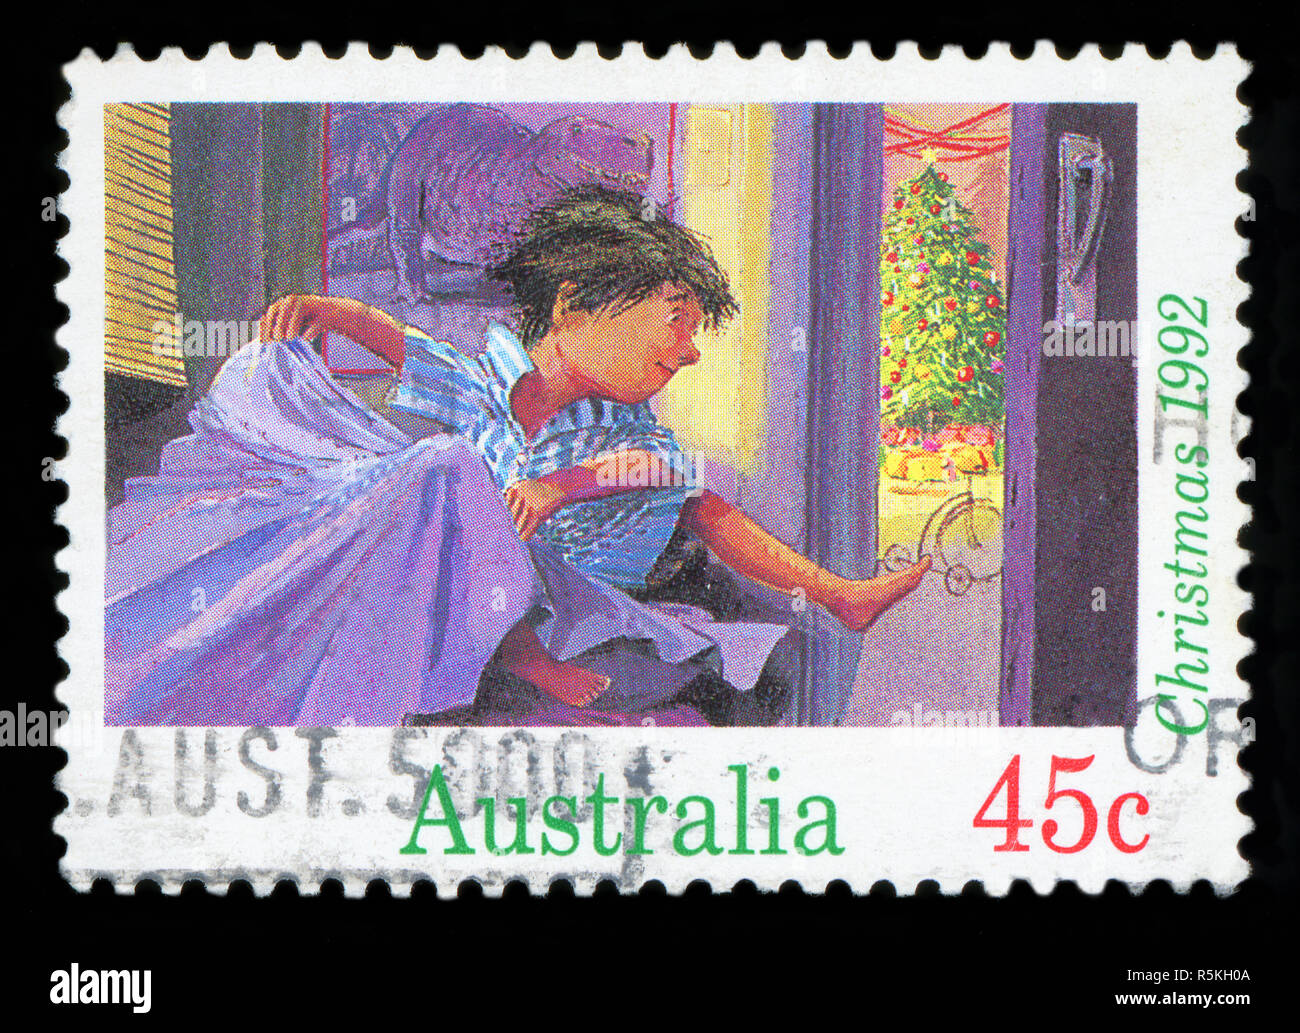 Australien - ca. 1992: einen Stempel in den Australien gedruckten zeigt Junge sprang vom Bett Weihnachten Morgen, Weihnachten, ca. 1992 Stockfoto